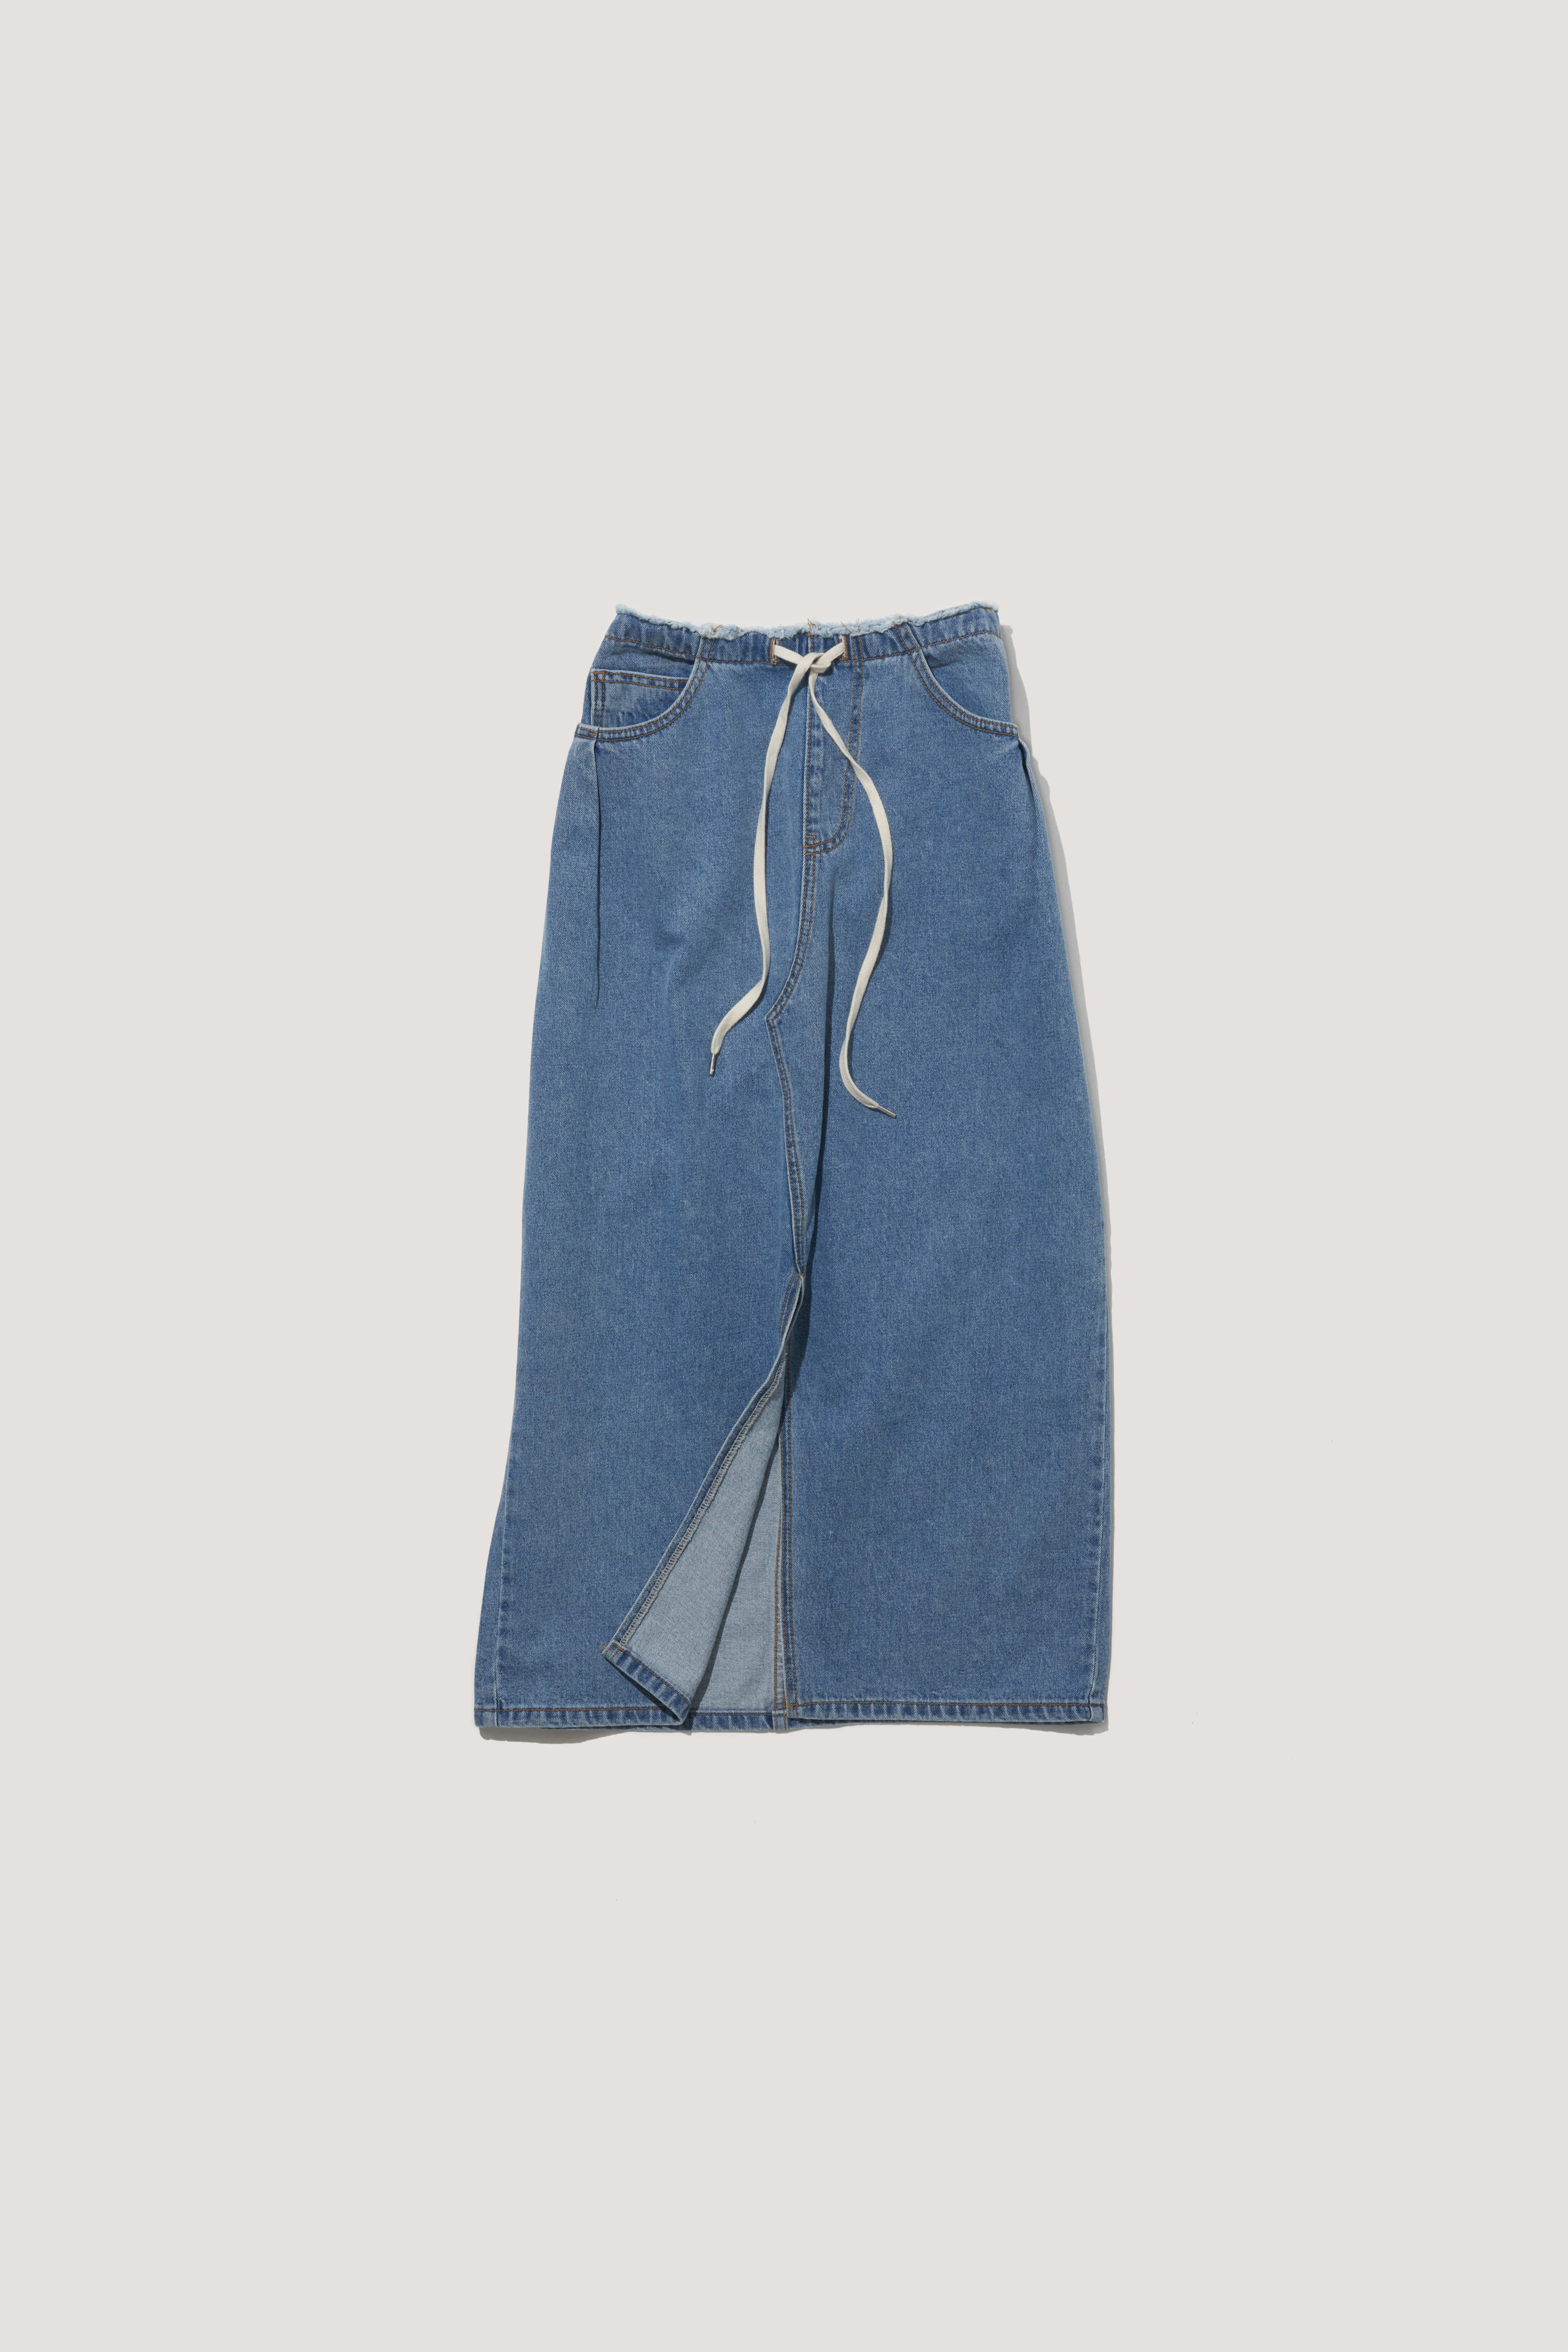 Natural Cut Waist String Denim Skirt [light blue]